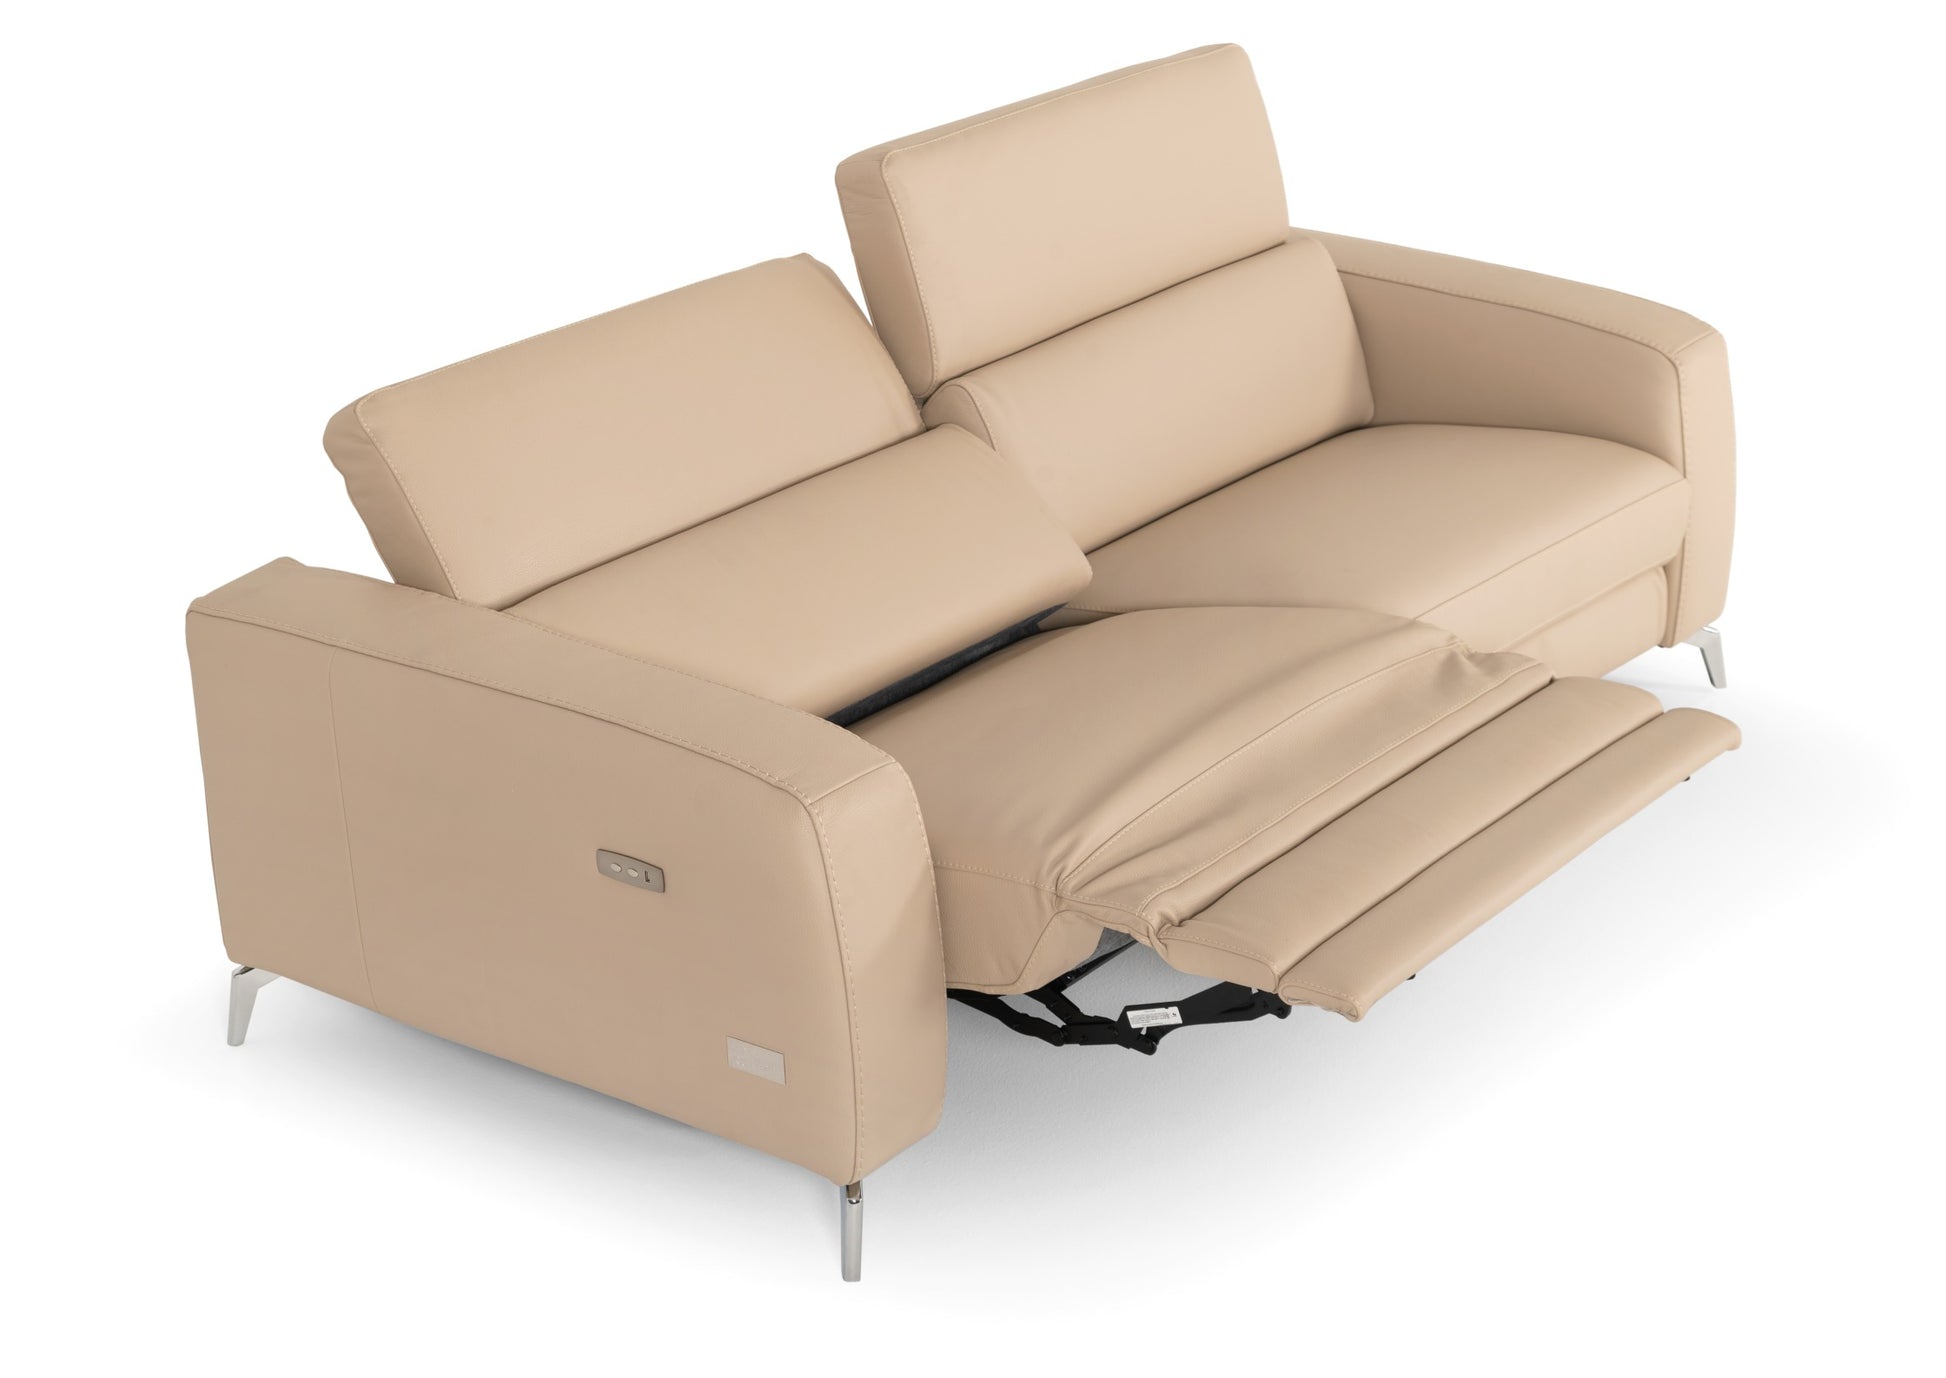 VIG Furniture Coronelli Turin Cappuccino Leather 2 Seater 91" Recliner Sofa